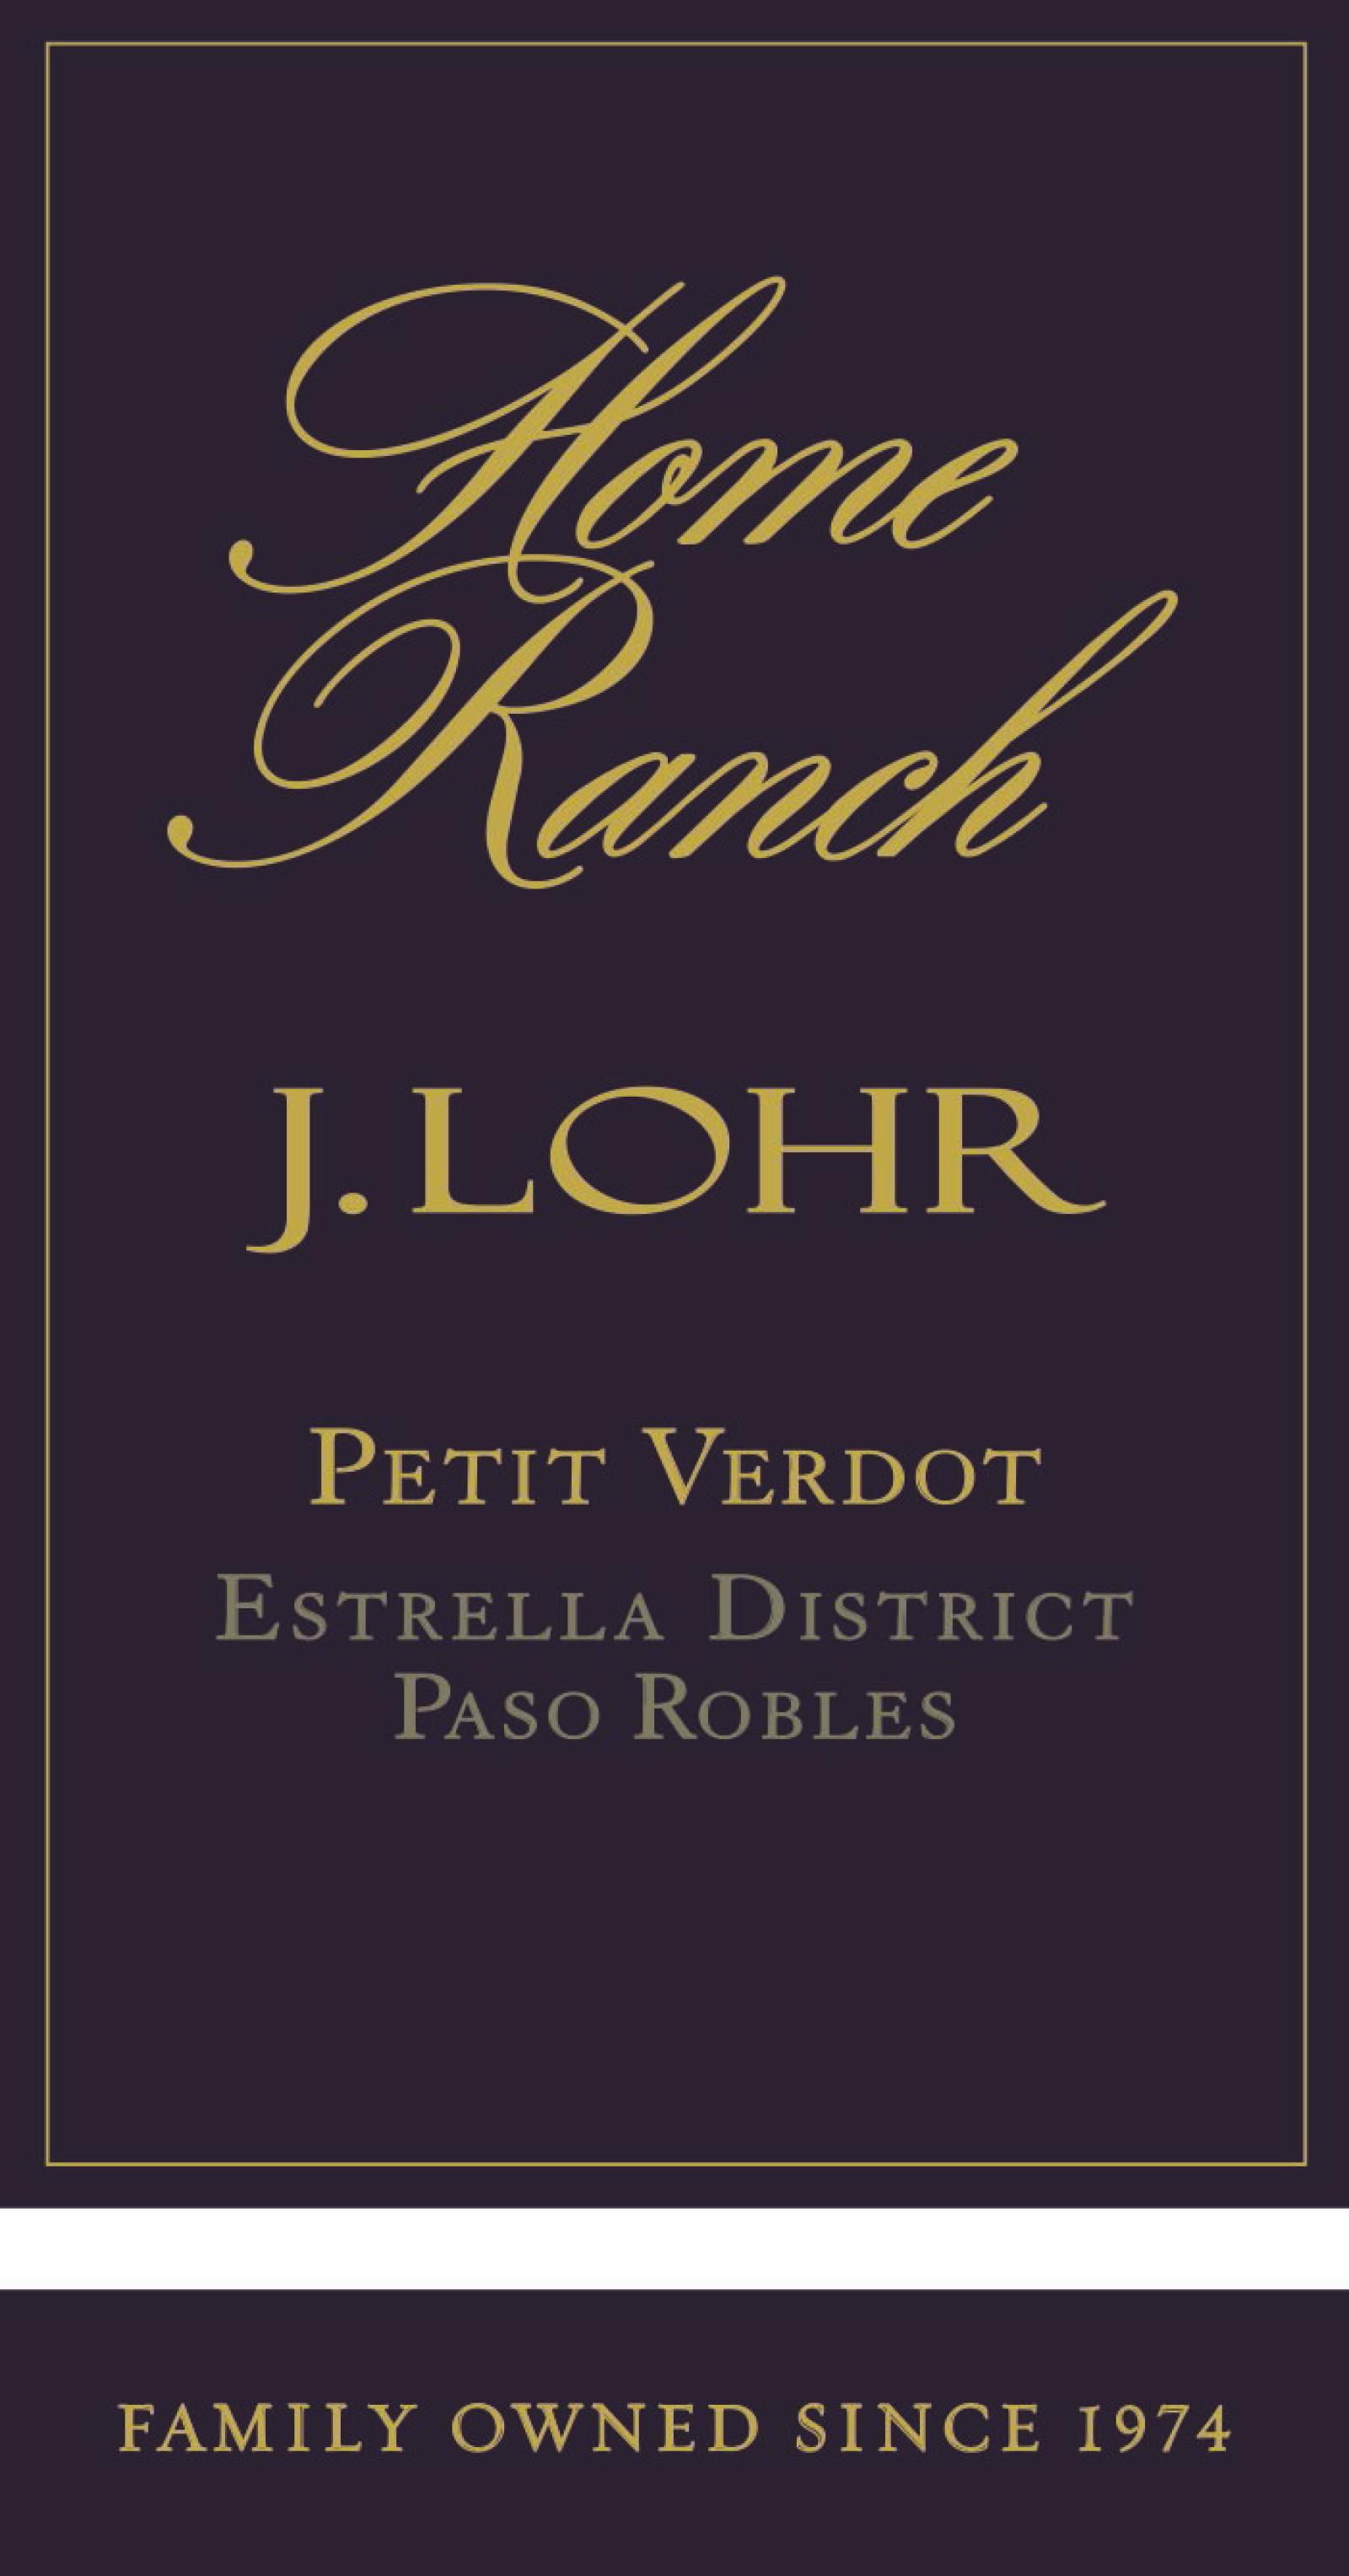 J Lohr Home Ranch Petit Verdot 2019